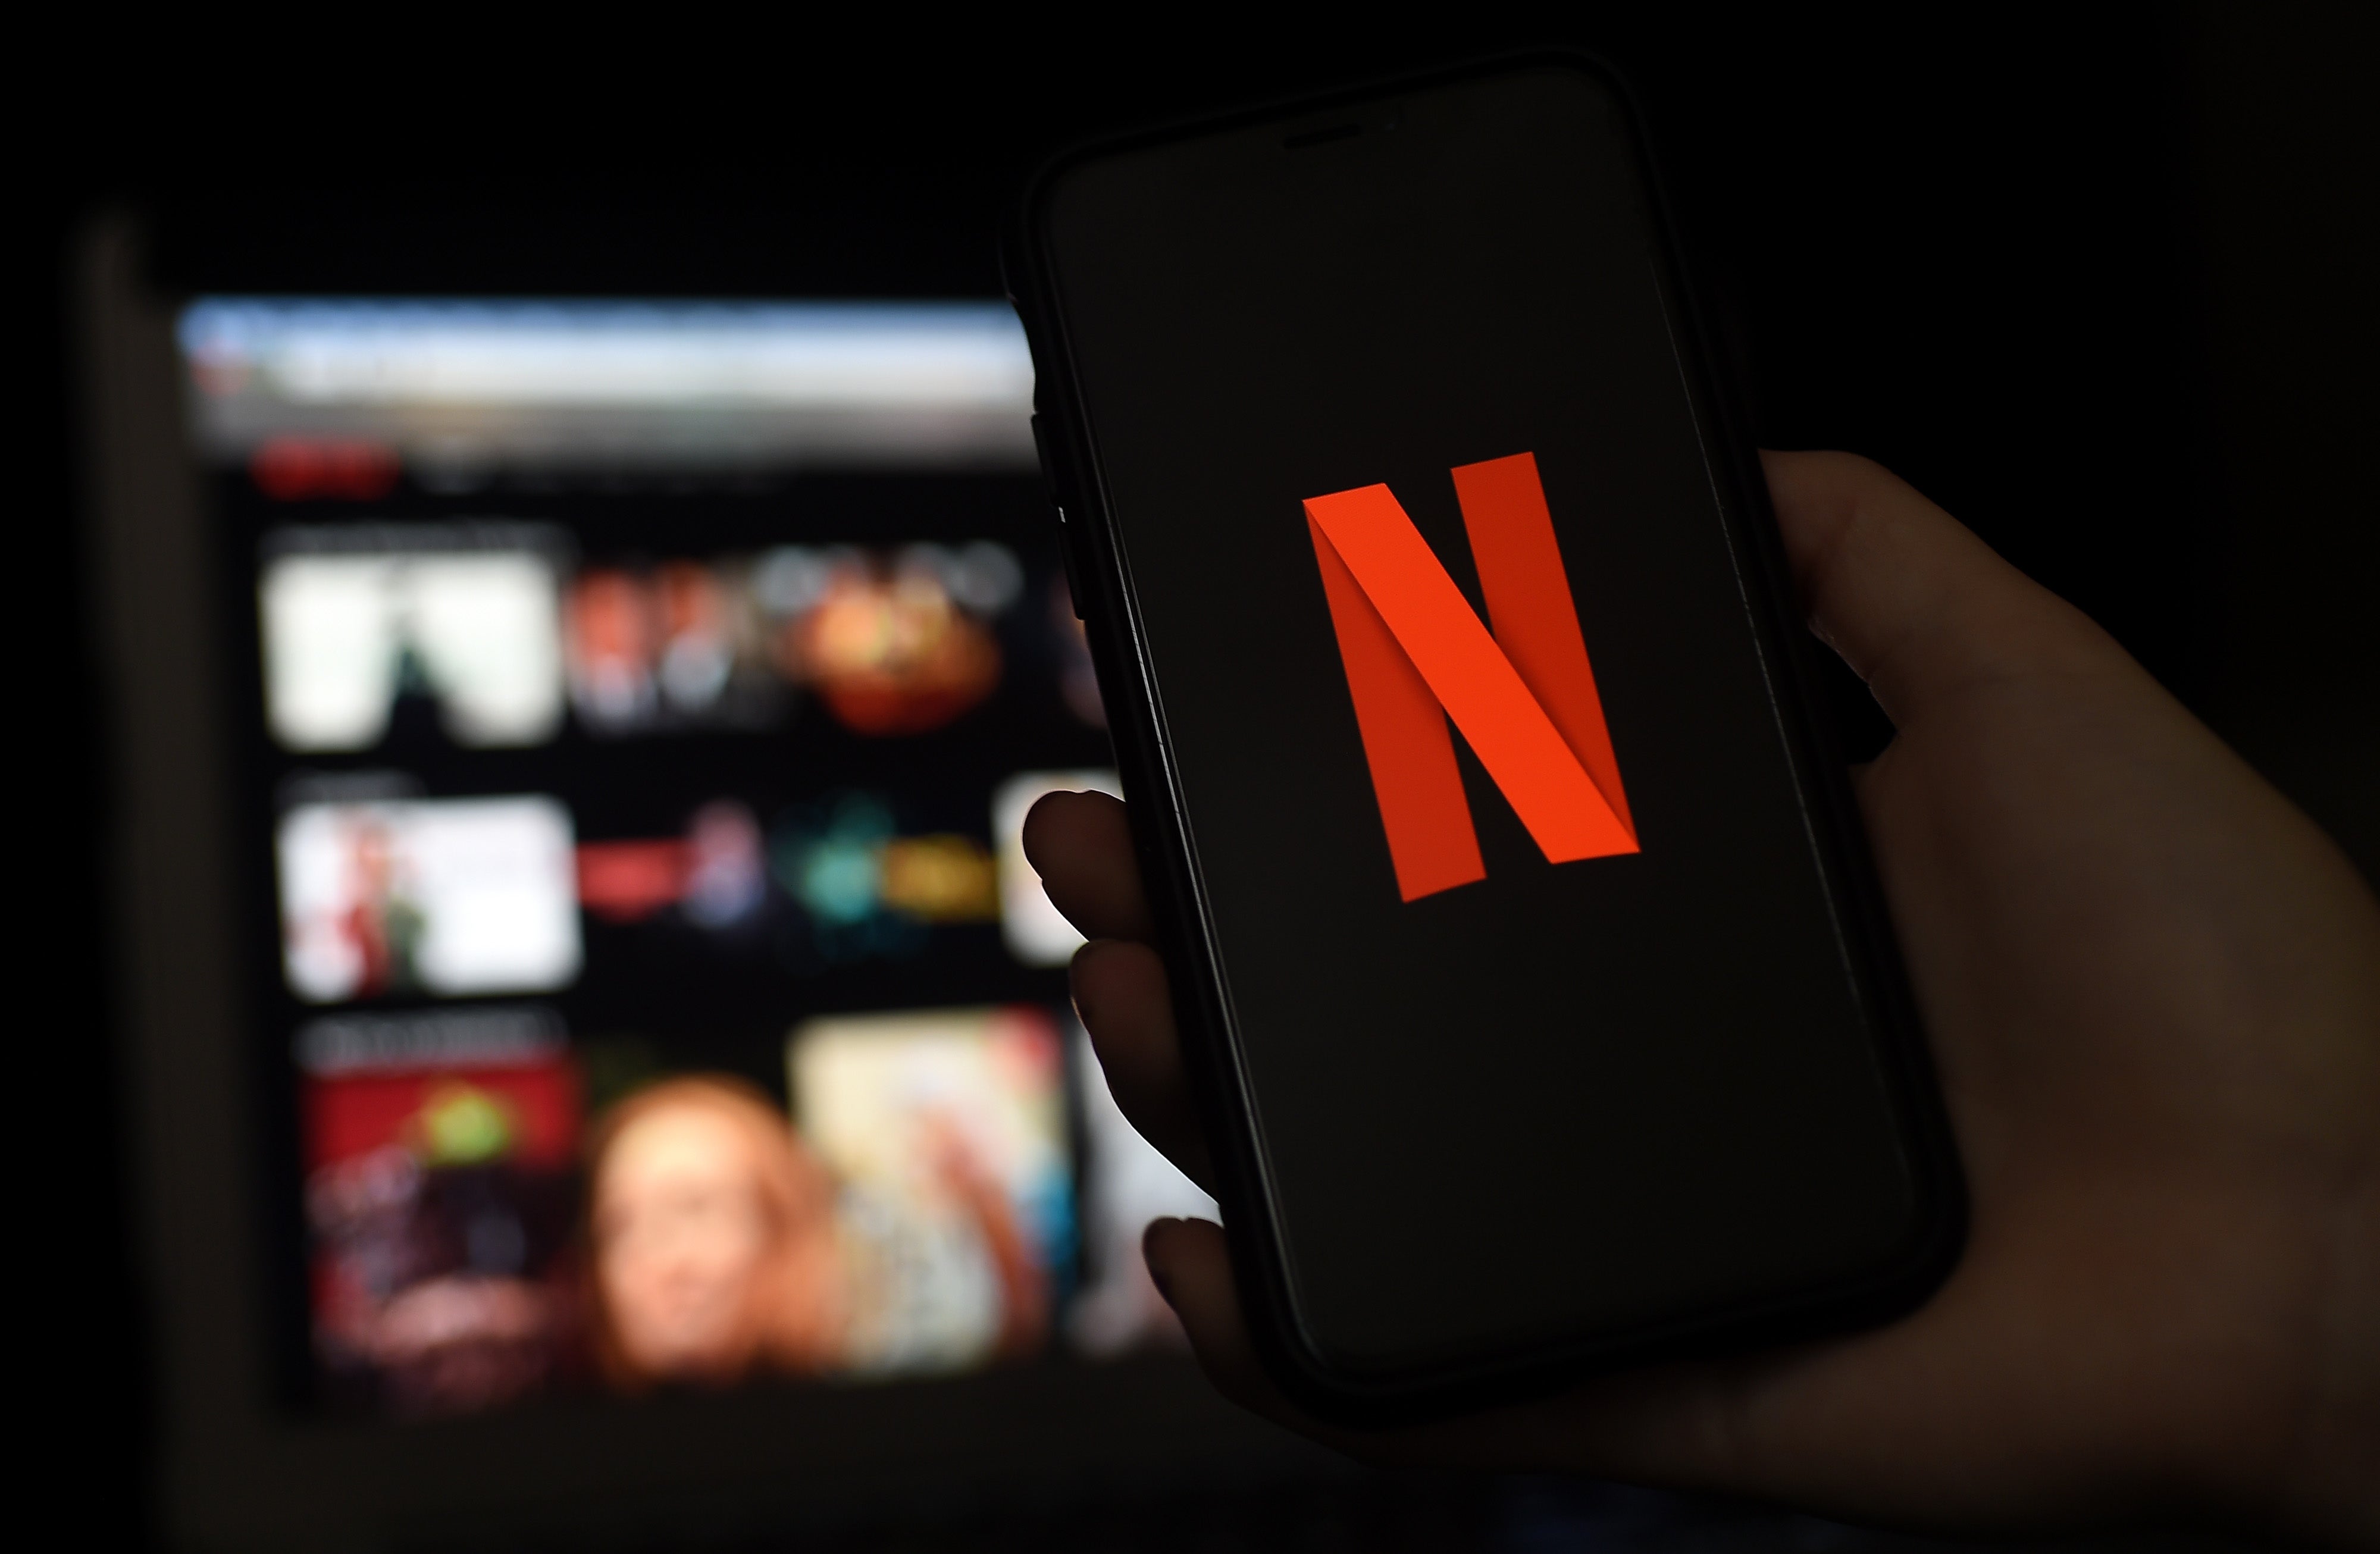 Las pantallas de una computadora y un teléfono móvil muestran el logo de Netflix el 31 de marzo de 2020 en Arlington, Virginia.